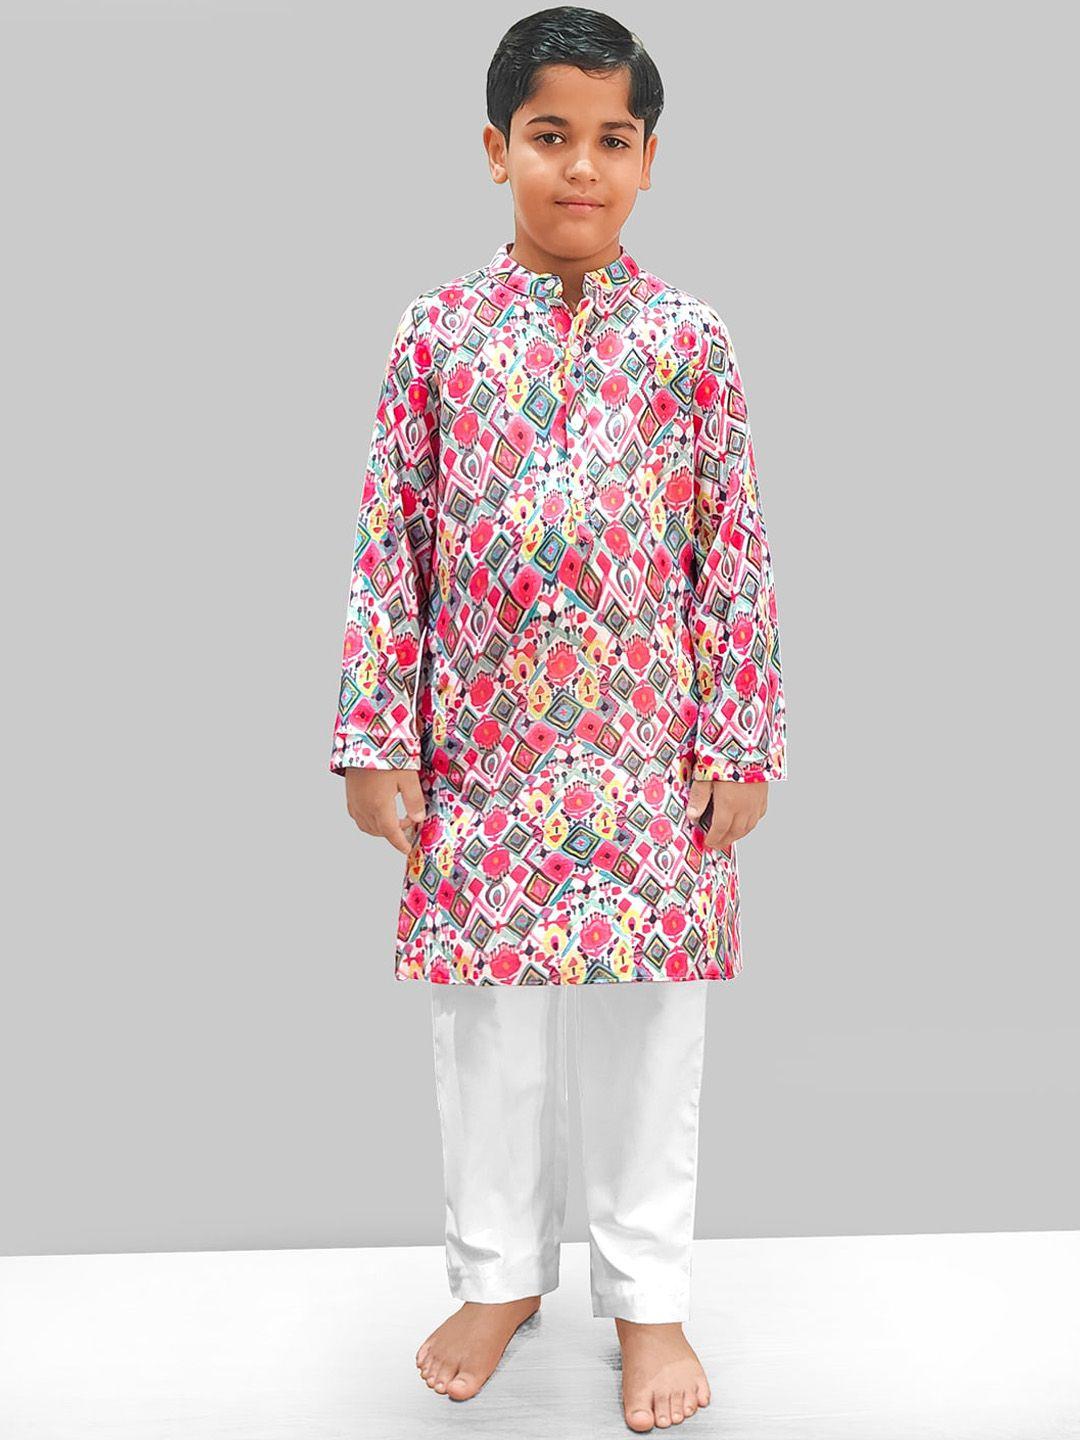 naughty ninos boys ethnic motifs printed regular kurta with pyjamas